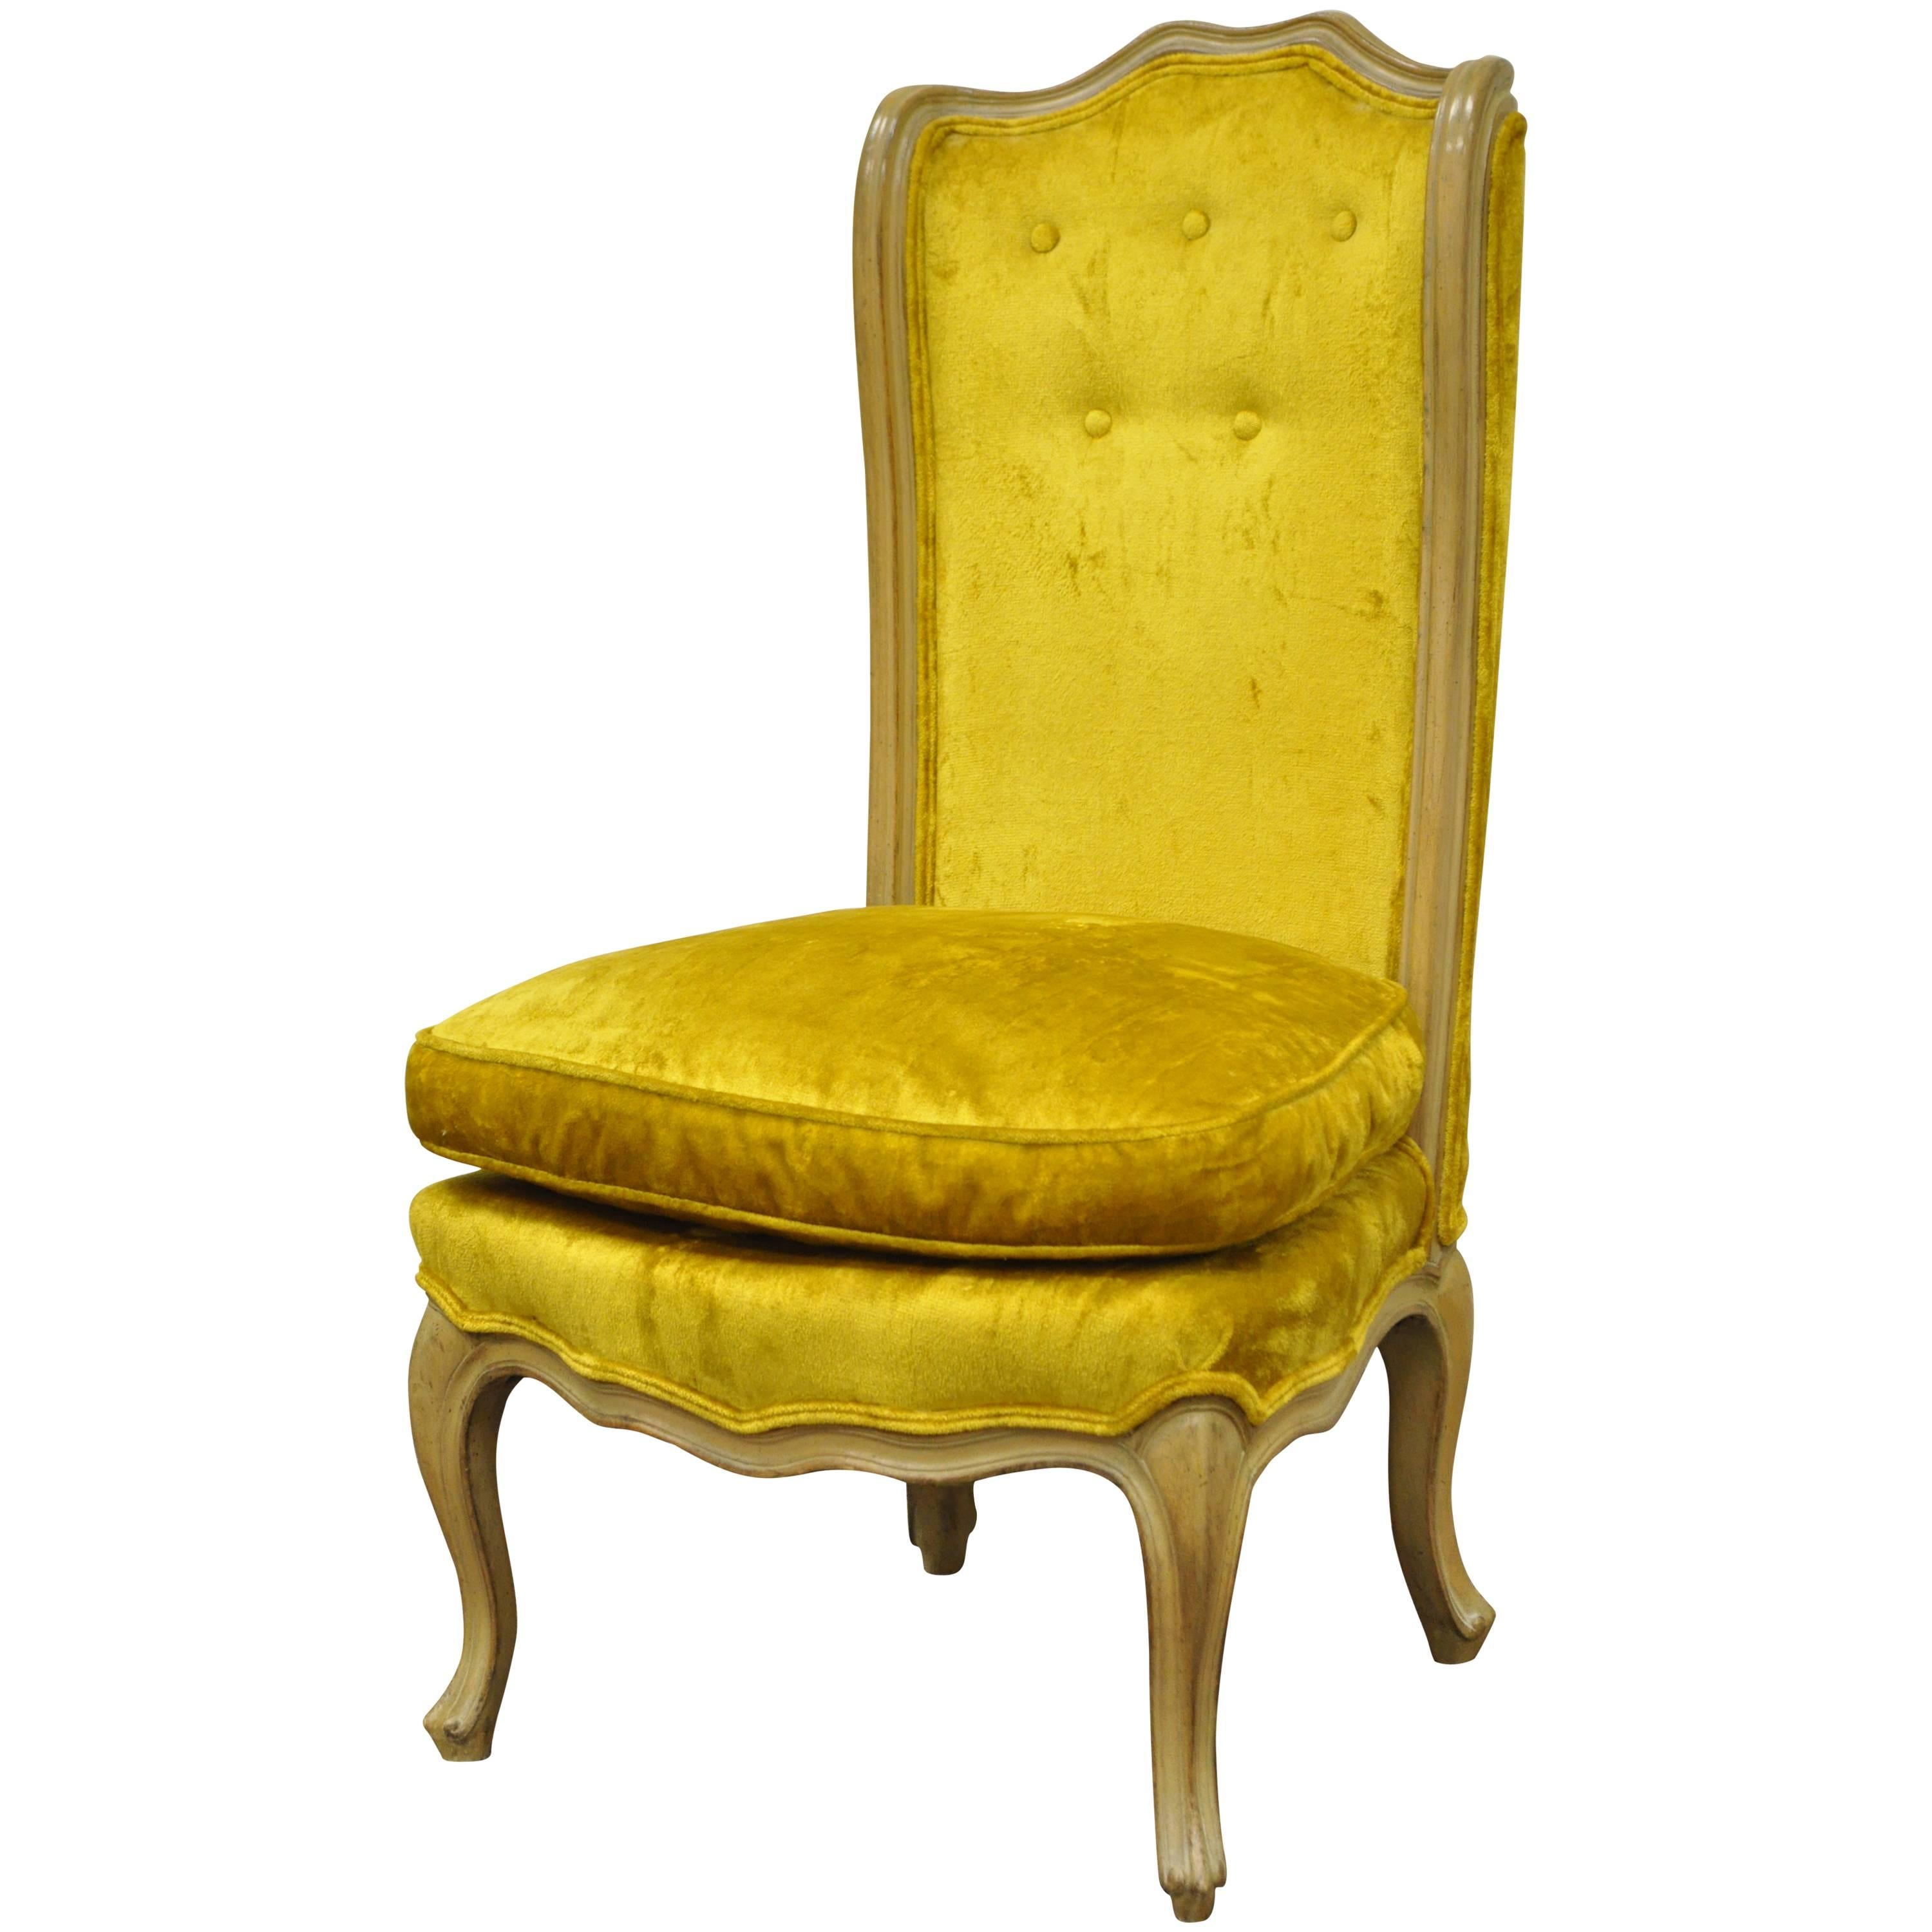 Petite chaise pantoufle à dossier incurvé de style provincial français Louis XV jaune